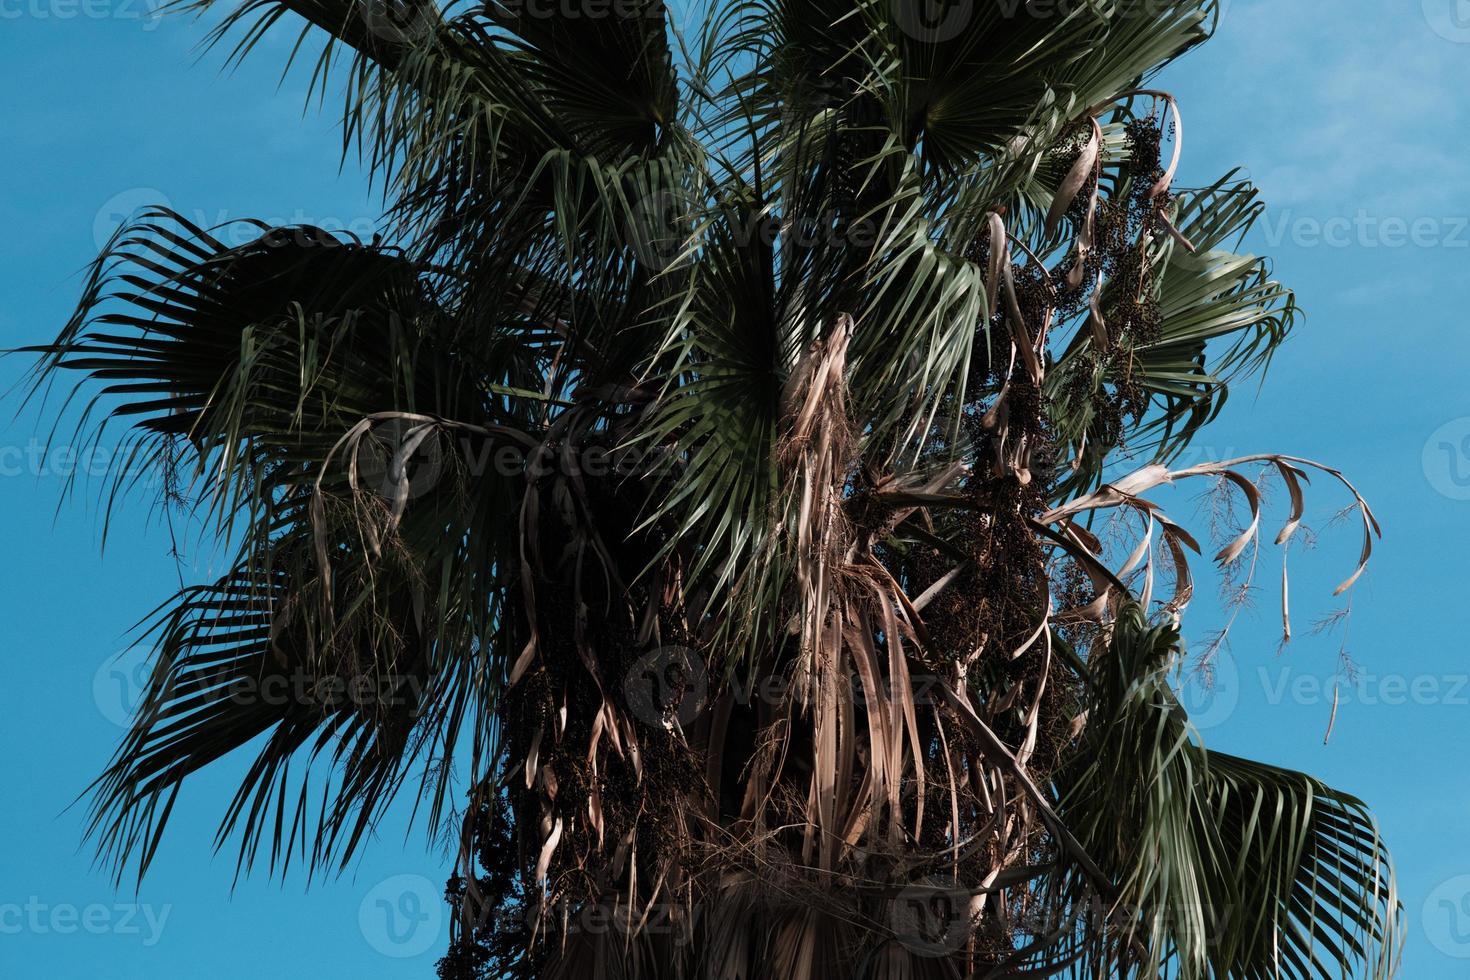 palmera tropical en el cielo, silueta de cocotero, rama tropical al aire libre, cierre de follaje tropical, fronda de plantas verdes en el viento, árboles exóticos en unas vacaciones en la playa. foto